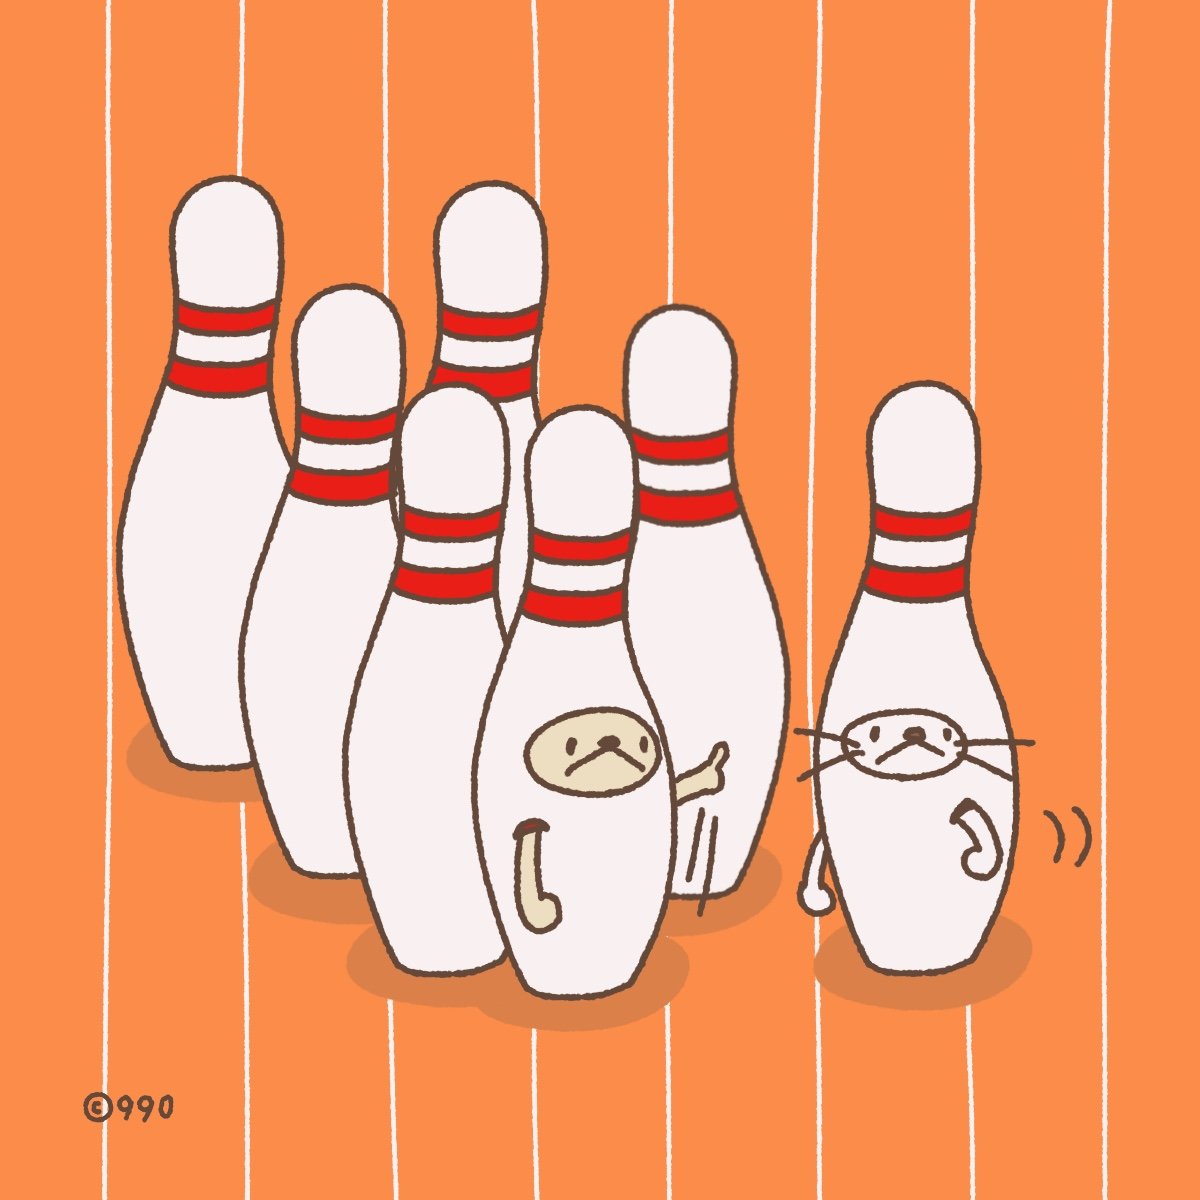 整列〜🎳

#ボウリングの日 #もくようび #ククまる #ククまるの日常 #イラスト #イラスト好きさんと繋がりたい #イラスト好きな人と繋がりたい #癒し #絵描きさんと繋がりたい #絵 #くま #うさぎ #元アイドル #Bowling #idol #illust #illustration #bear #rabbit